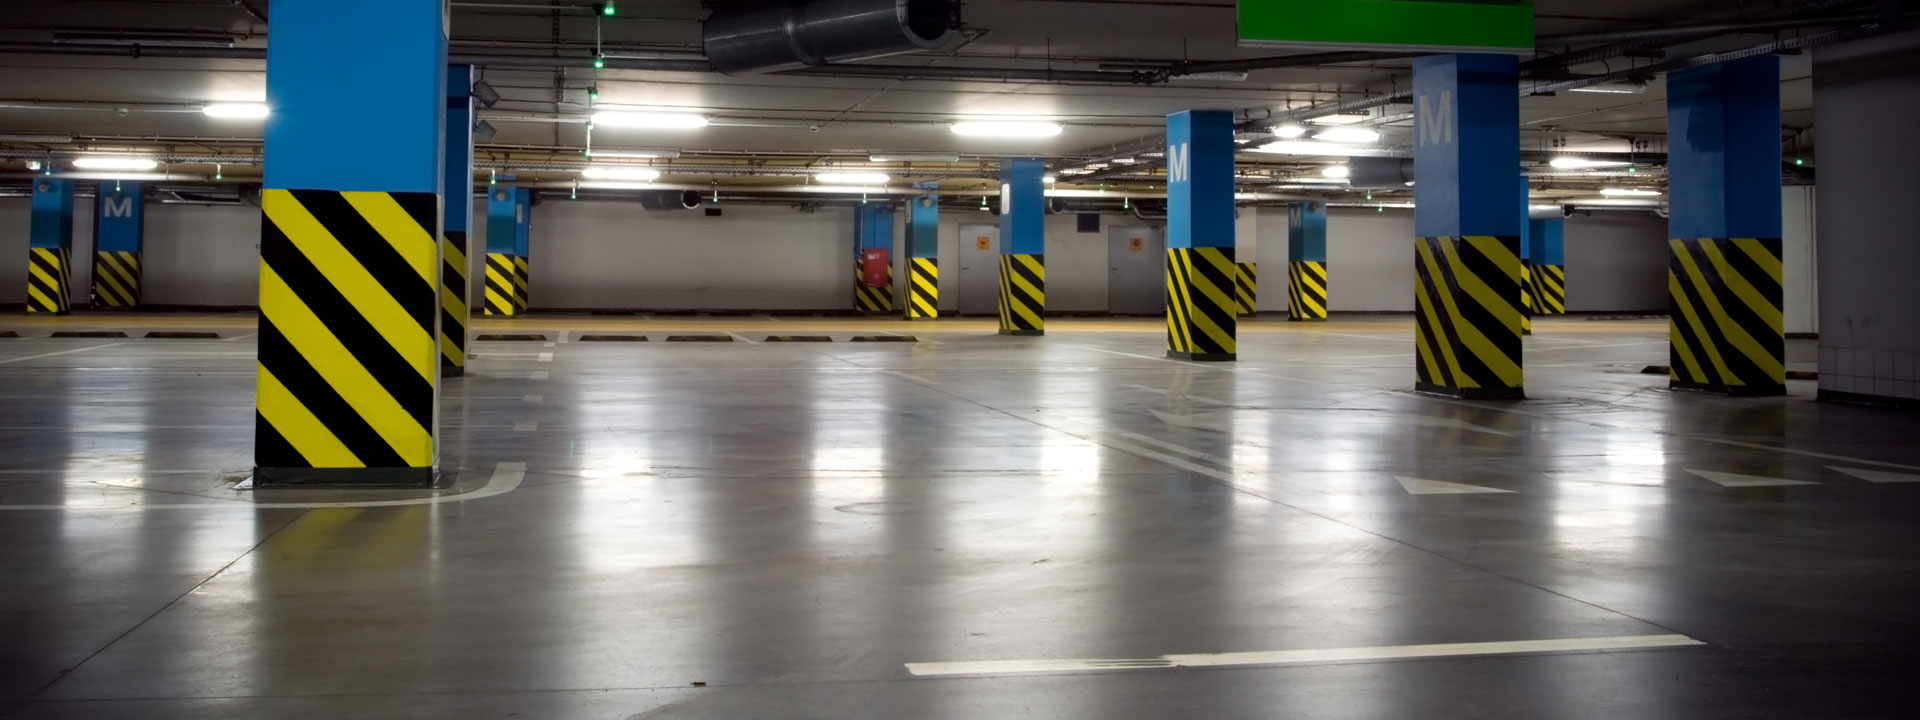 Garajes: espacios con potencial ecológico